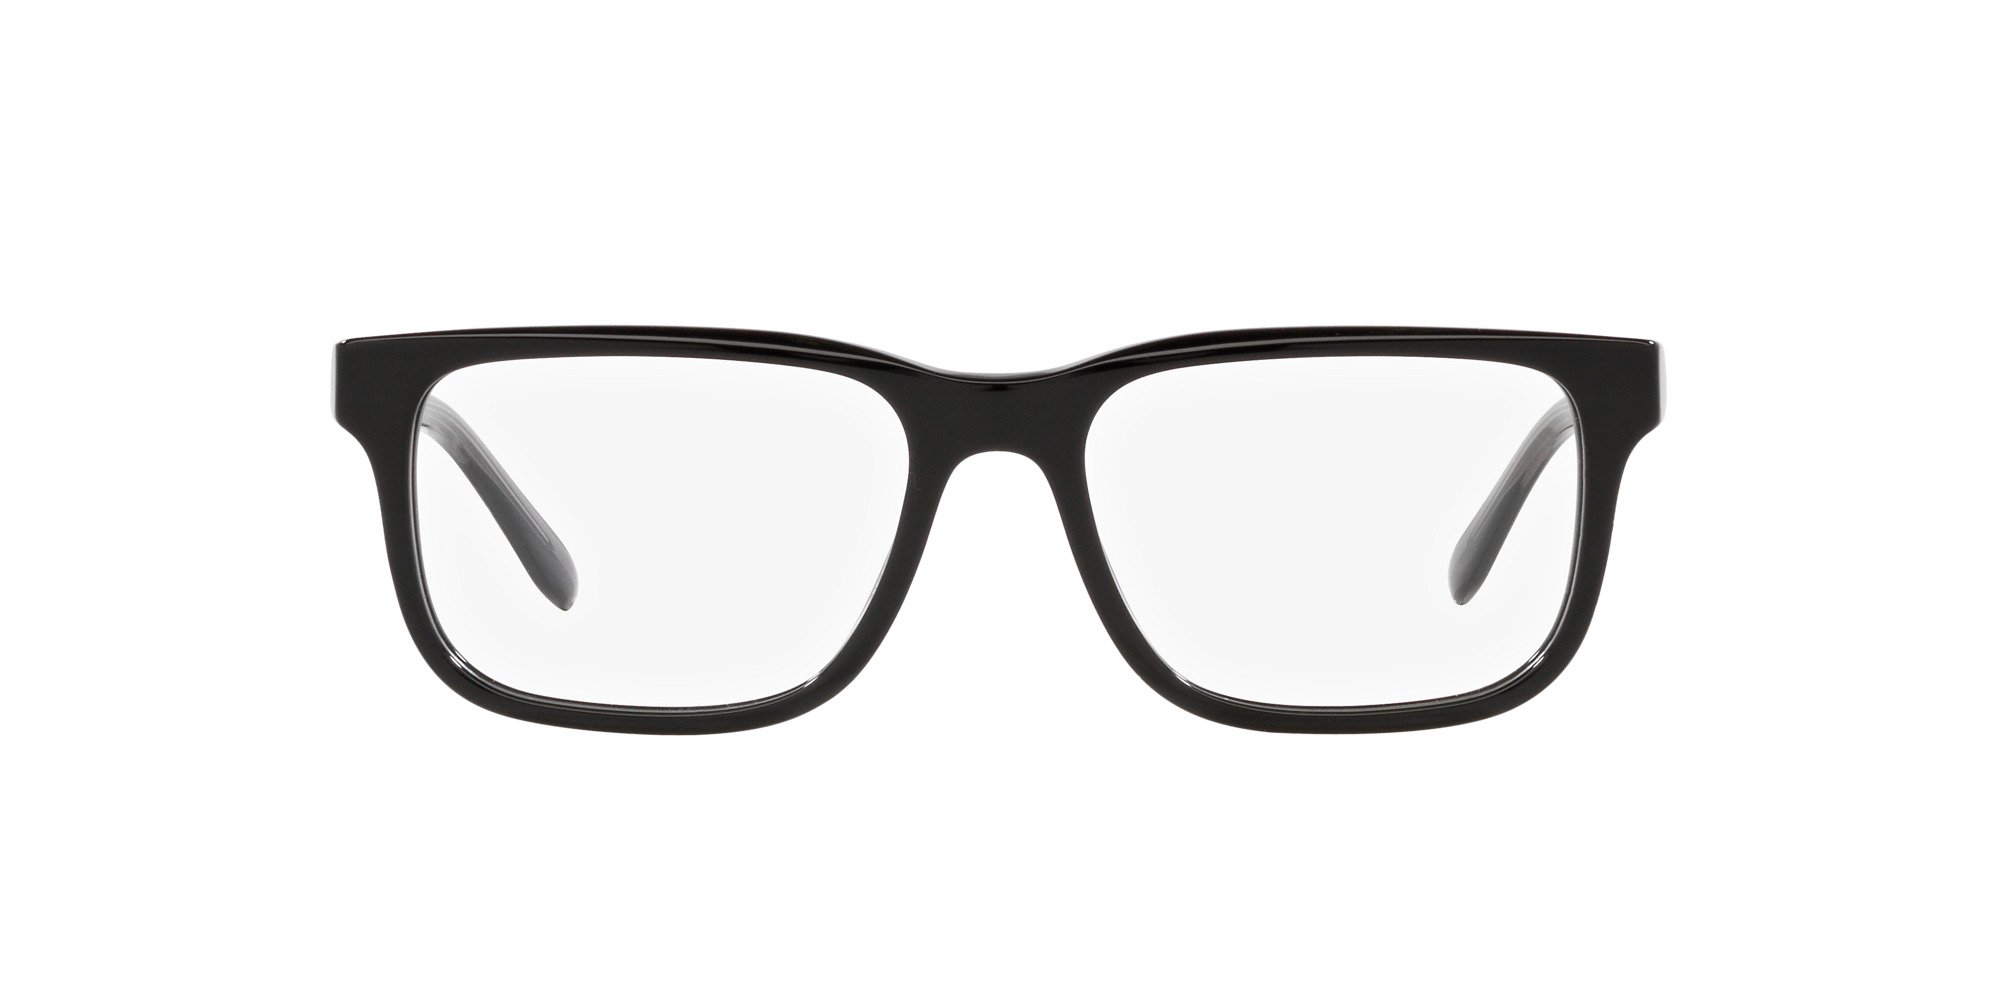 Das Bild zeigt die Korrektionsbrille EA3218 5017 von der Marke Emporio Armani in Schwarz.